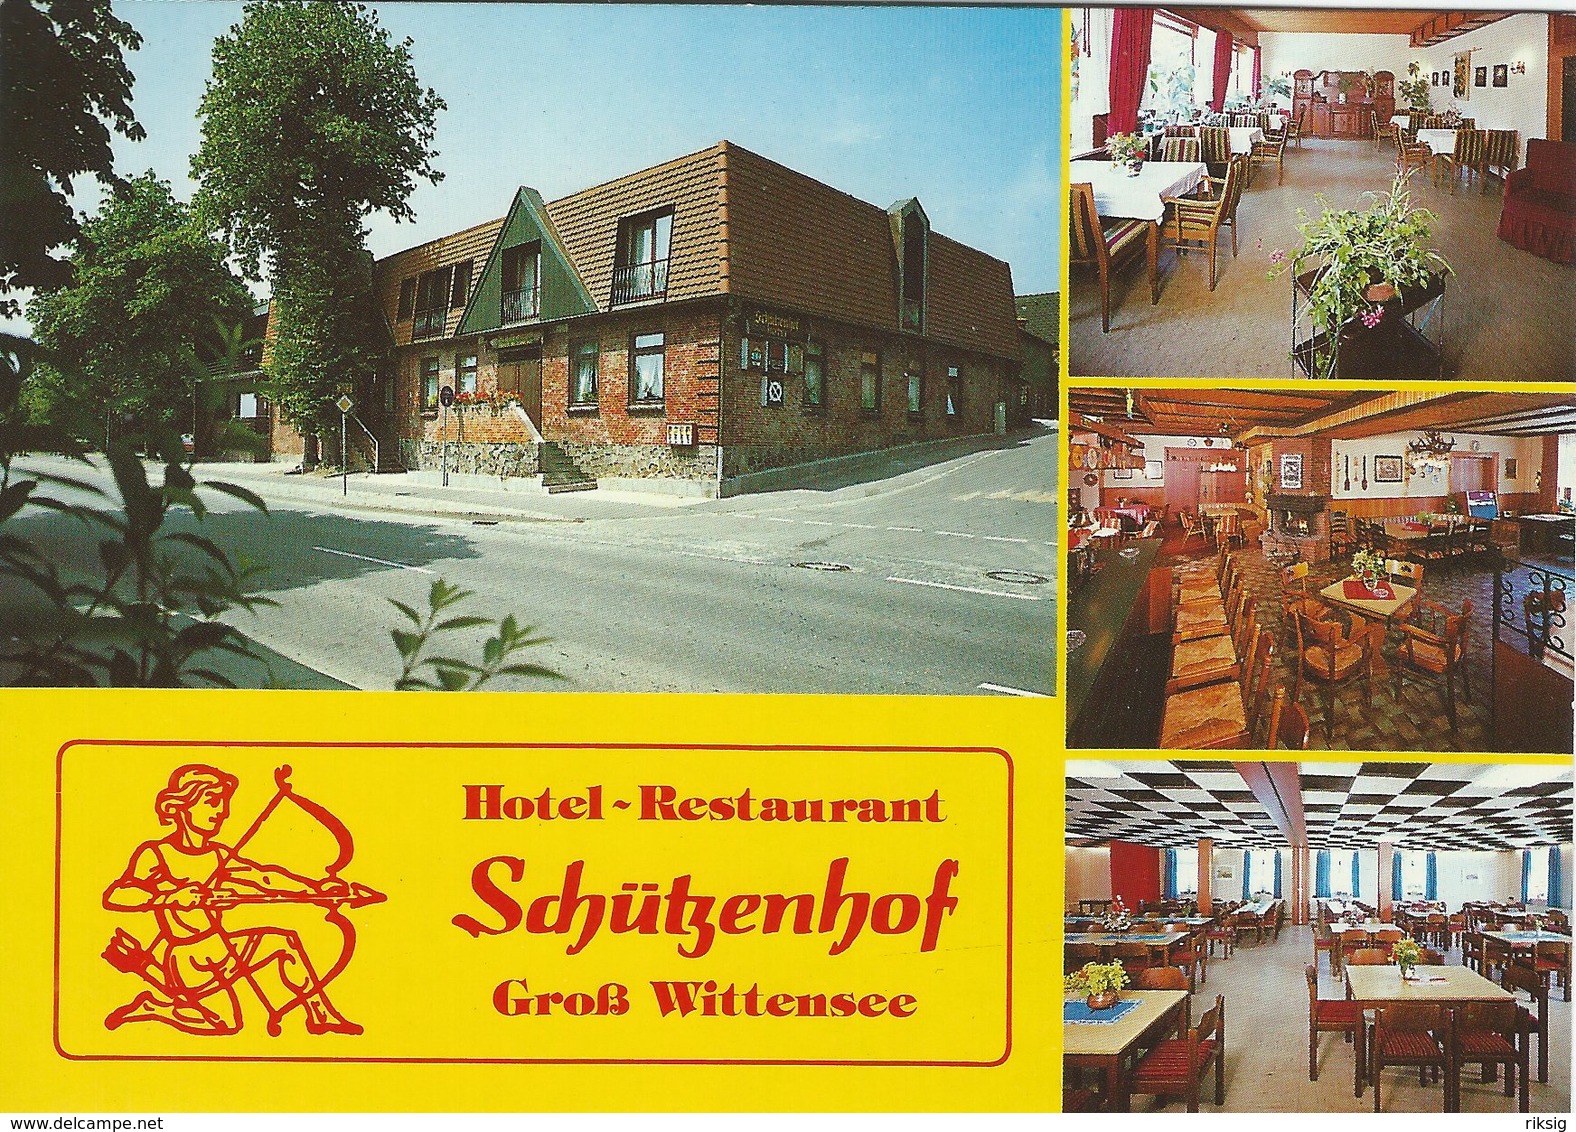 Hotel - Restaurant  Schützenhof. Groß Wittensee Bei Eckernförde. Germany.   B-3546 - Hotels & Restaurants